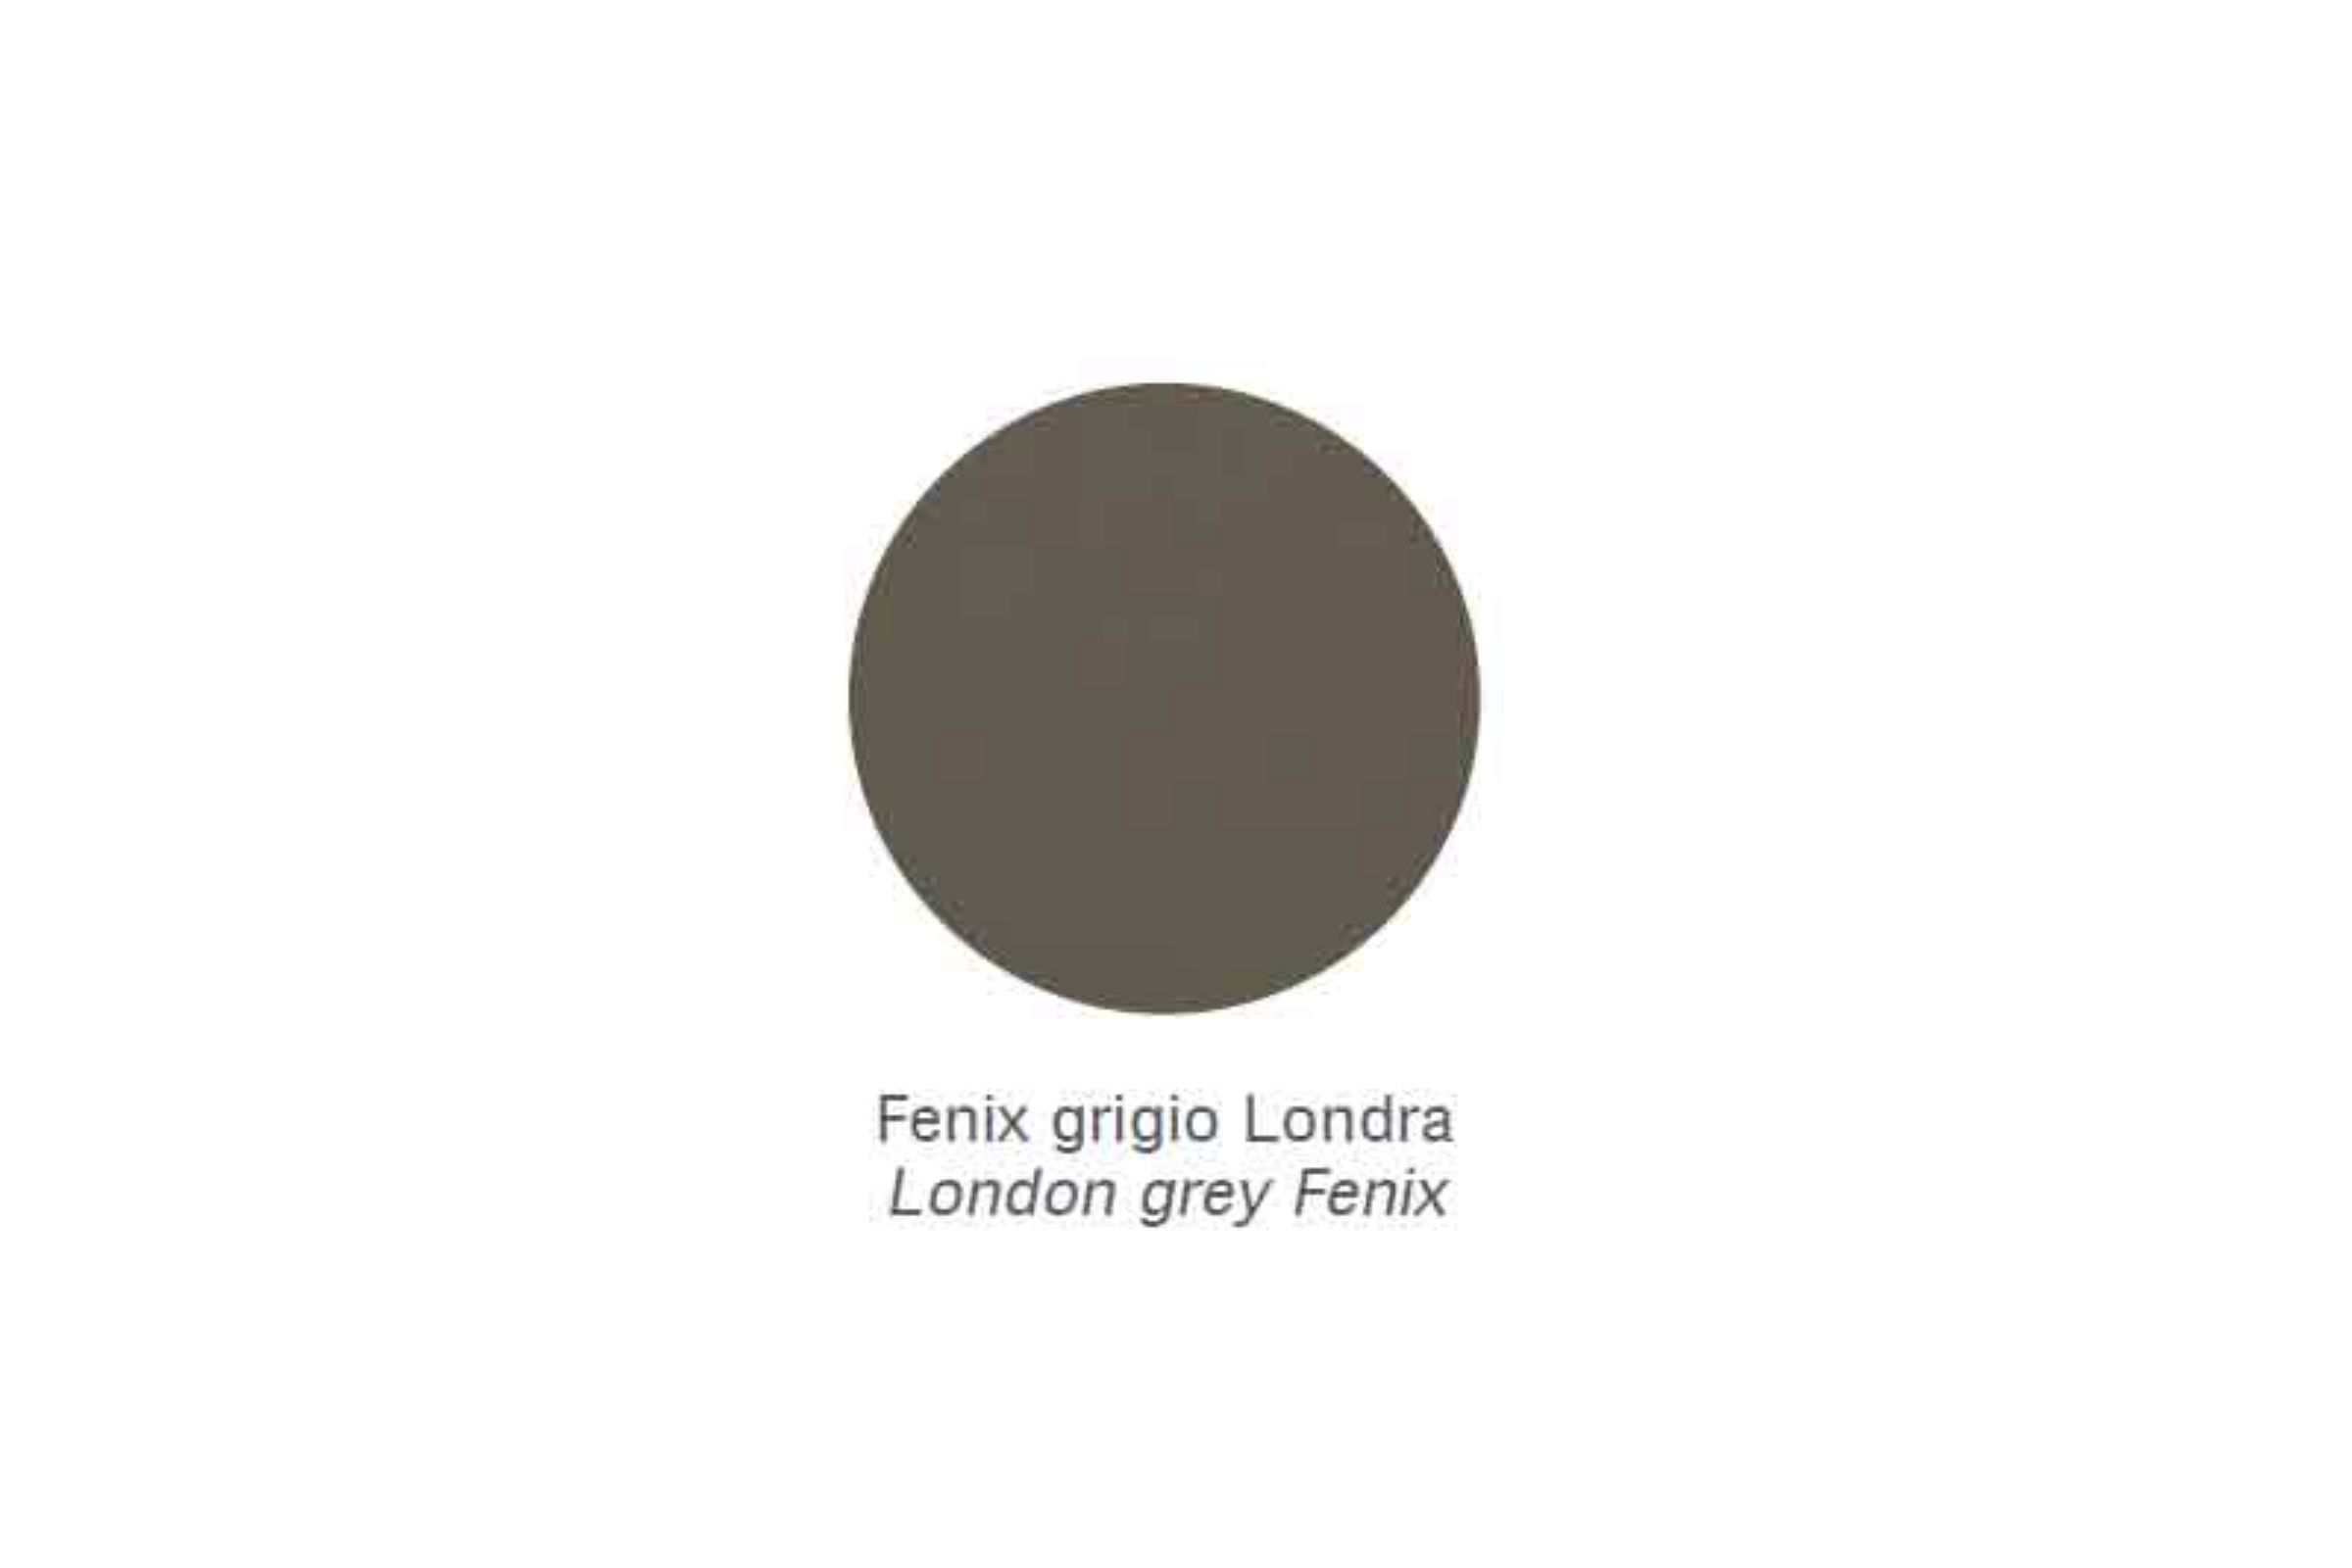 Mensola Zen /100 - Mensola Zen /100 Fenix grigio Londra